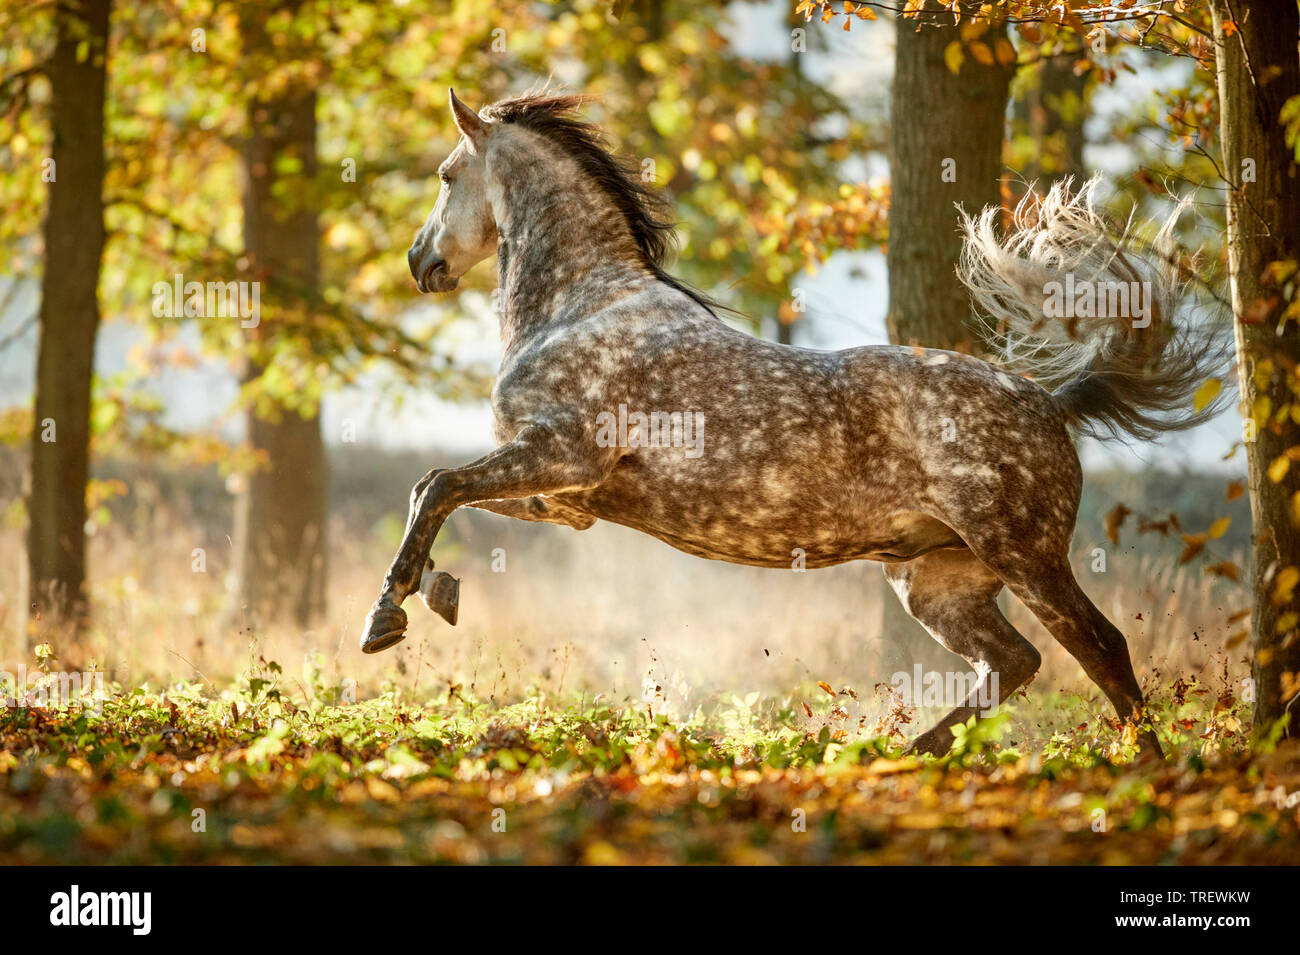 Cheval Espagnol pur, andalou. Gris pommelé des profils montrant dans une forêt en automne. Allemagne Banque D'Images